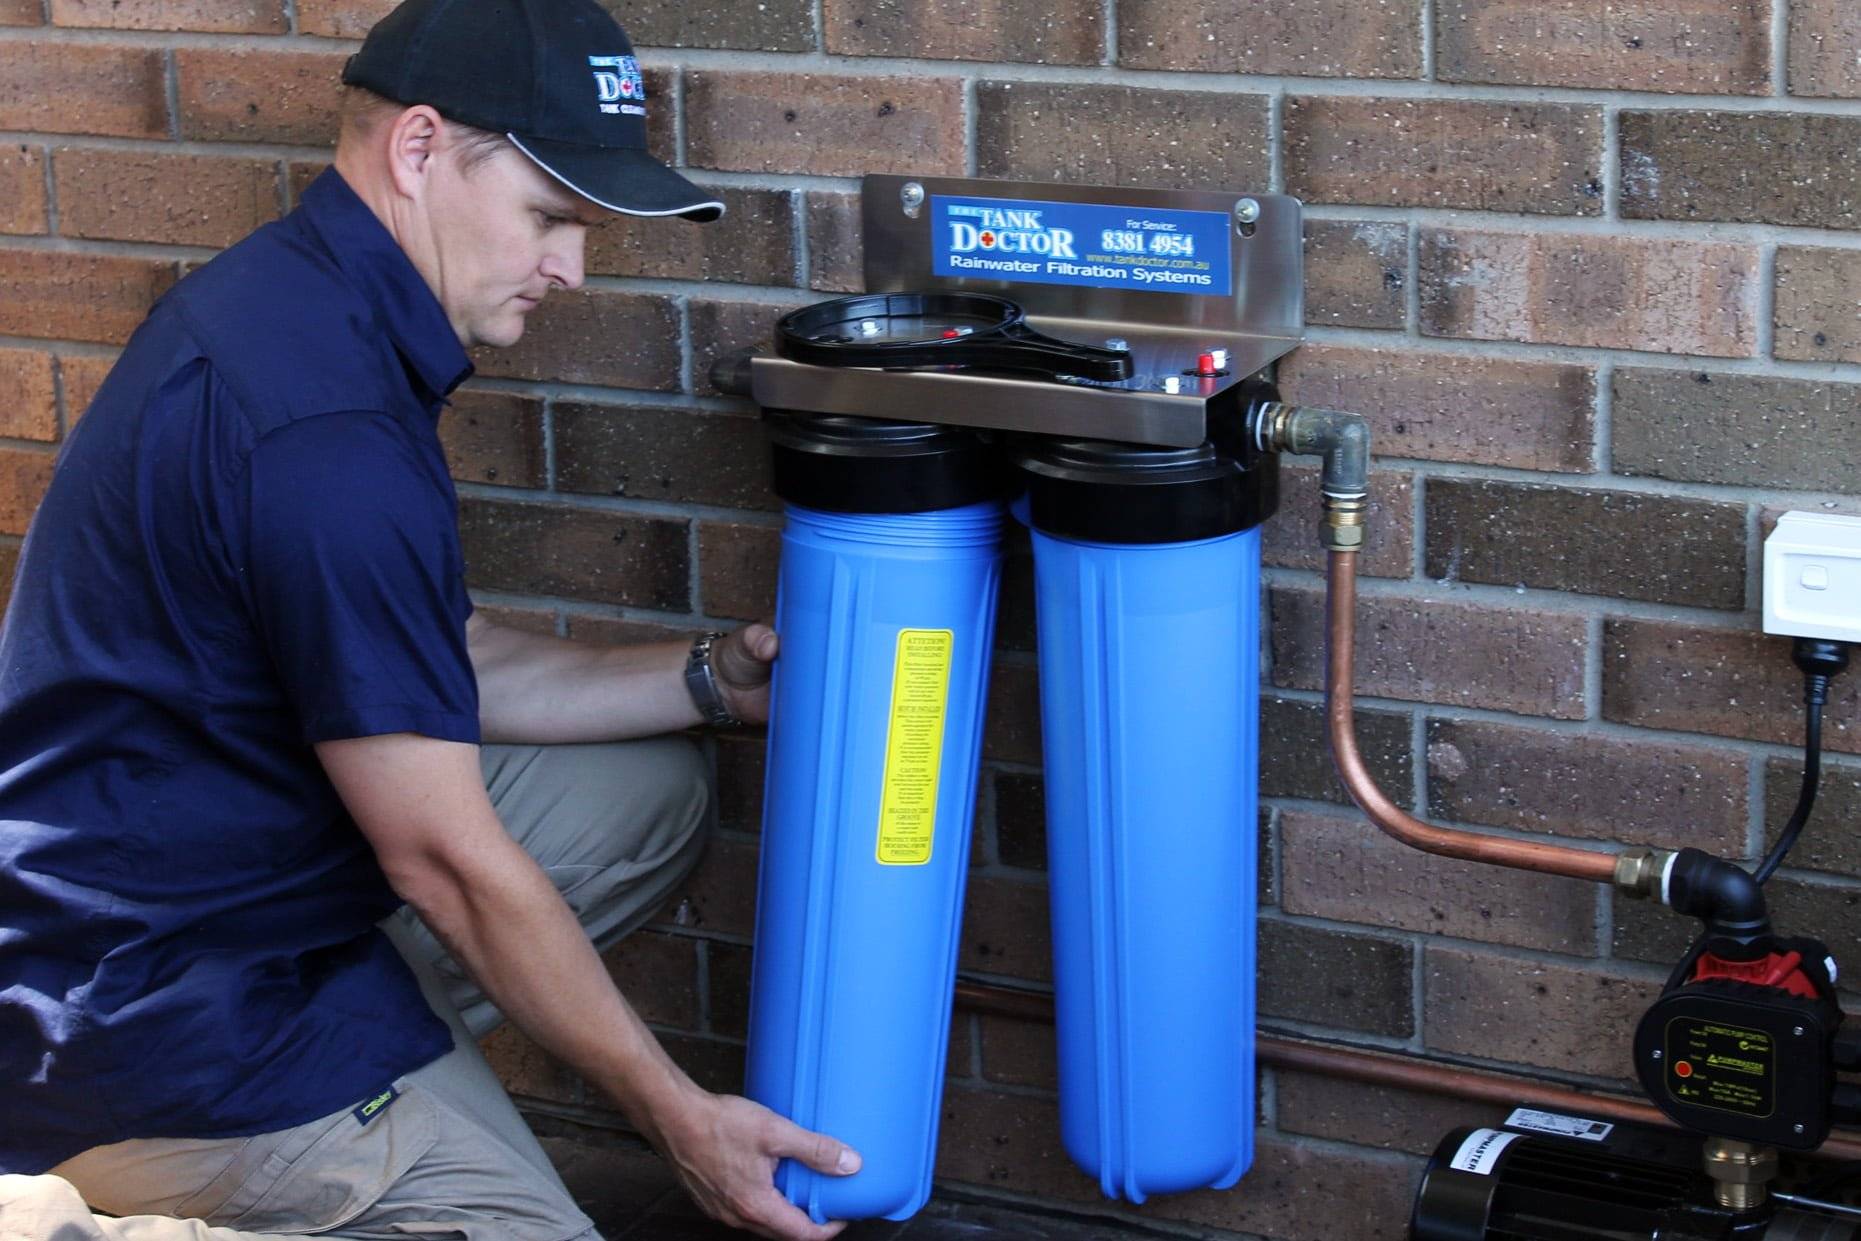 Как правильно установить фильтр для очистки воды и подключить его к водопроводу – схема подключения, варианты установки, настройки